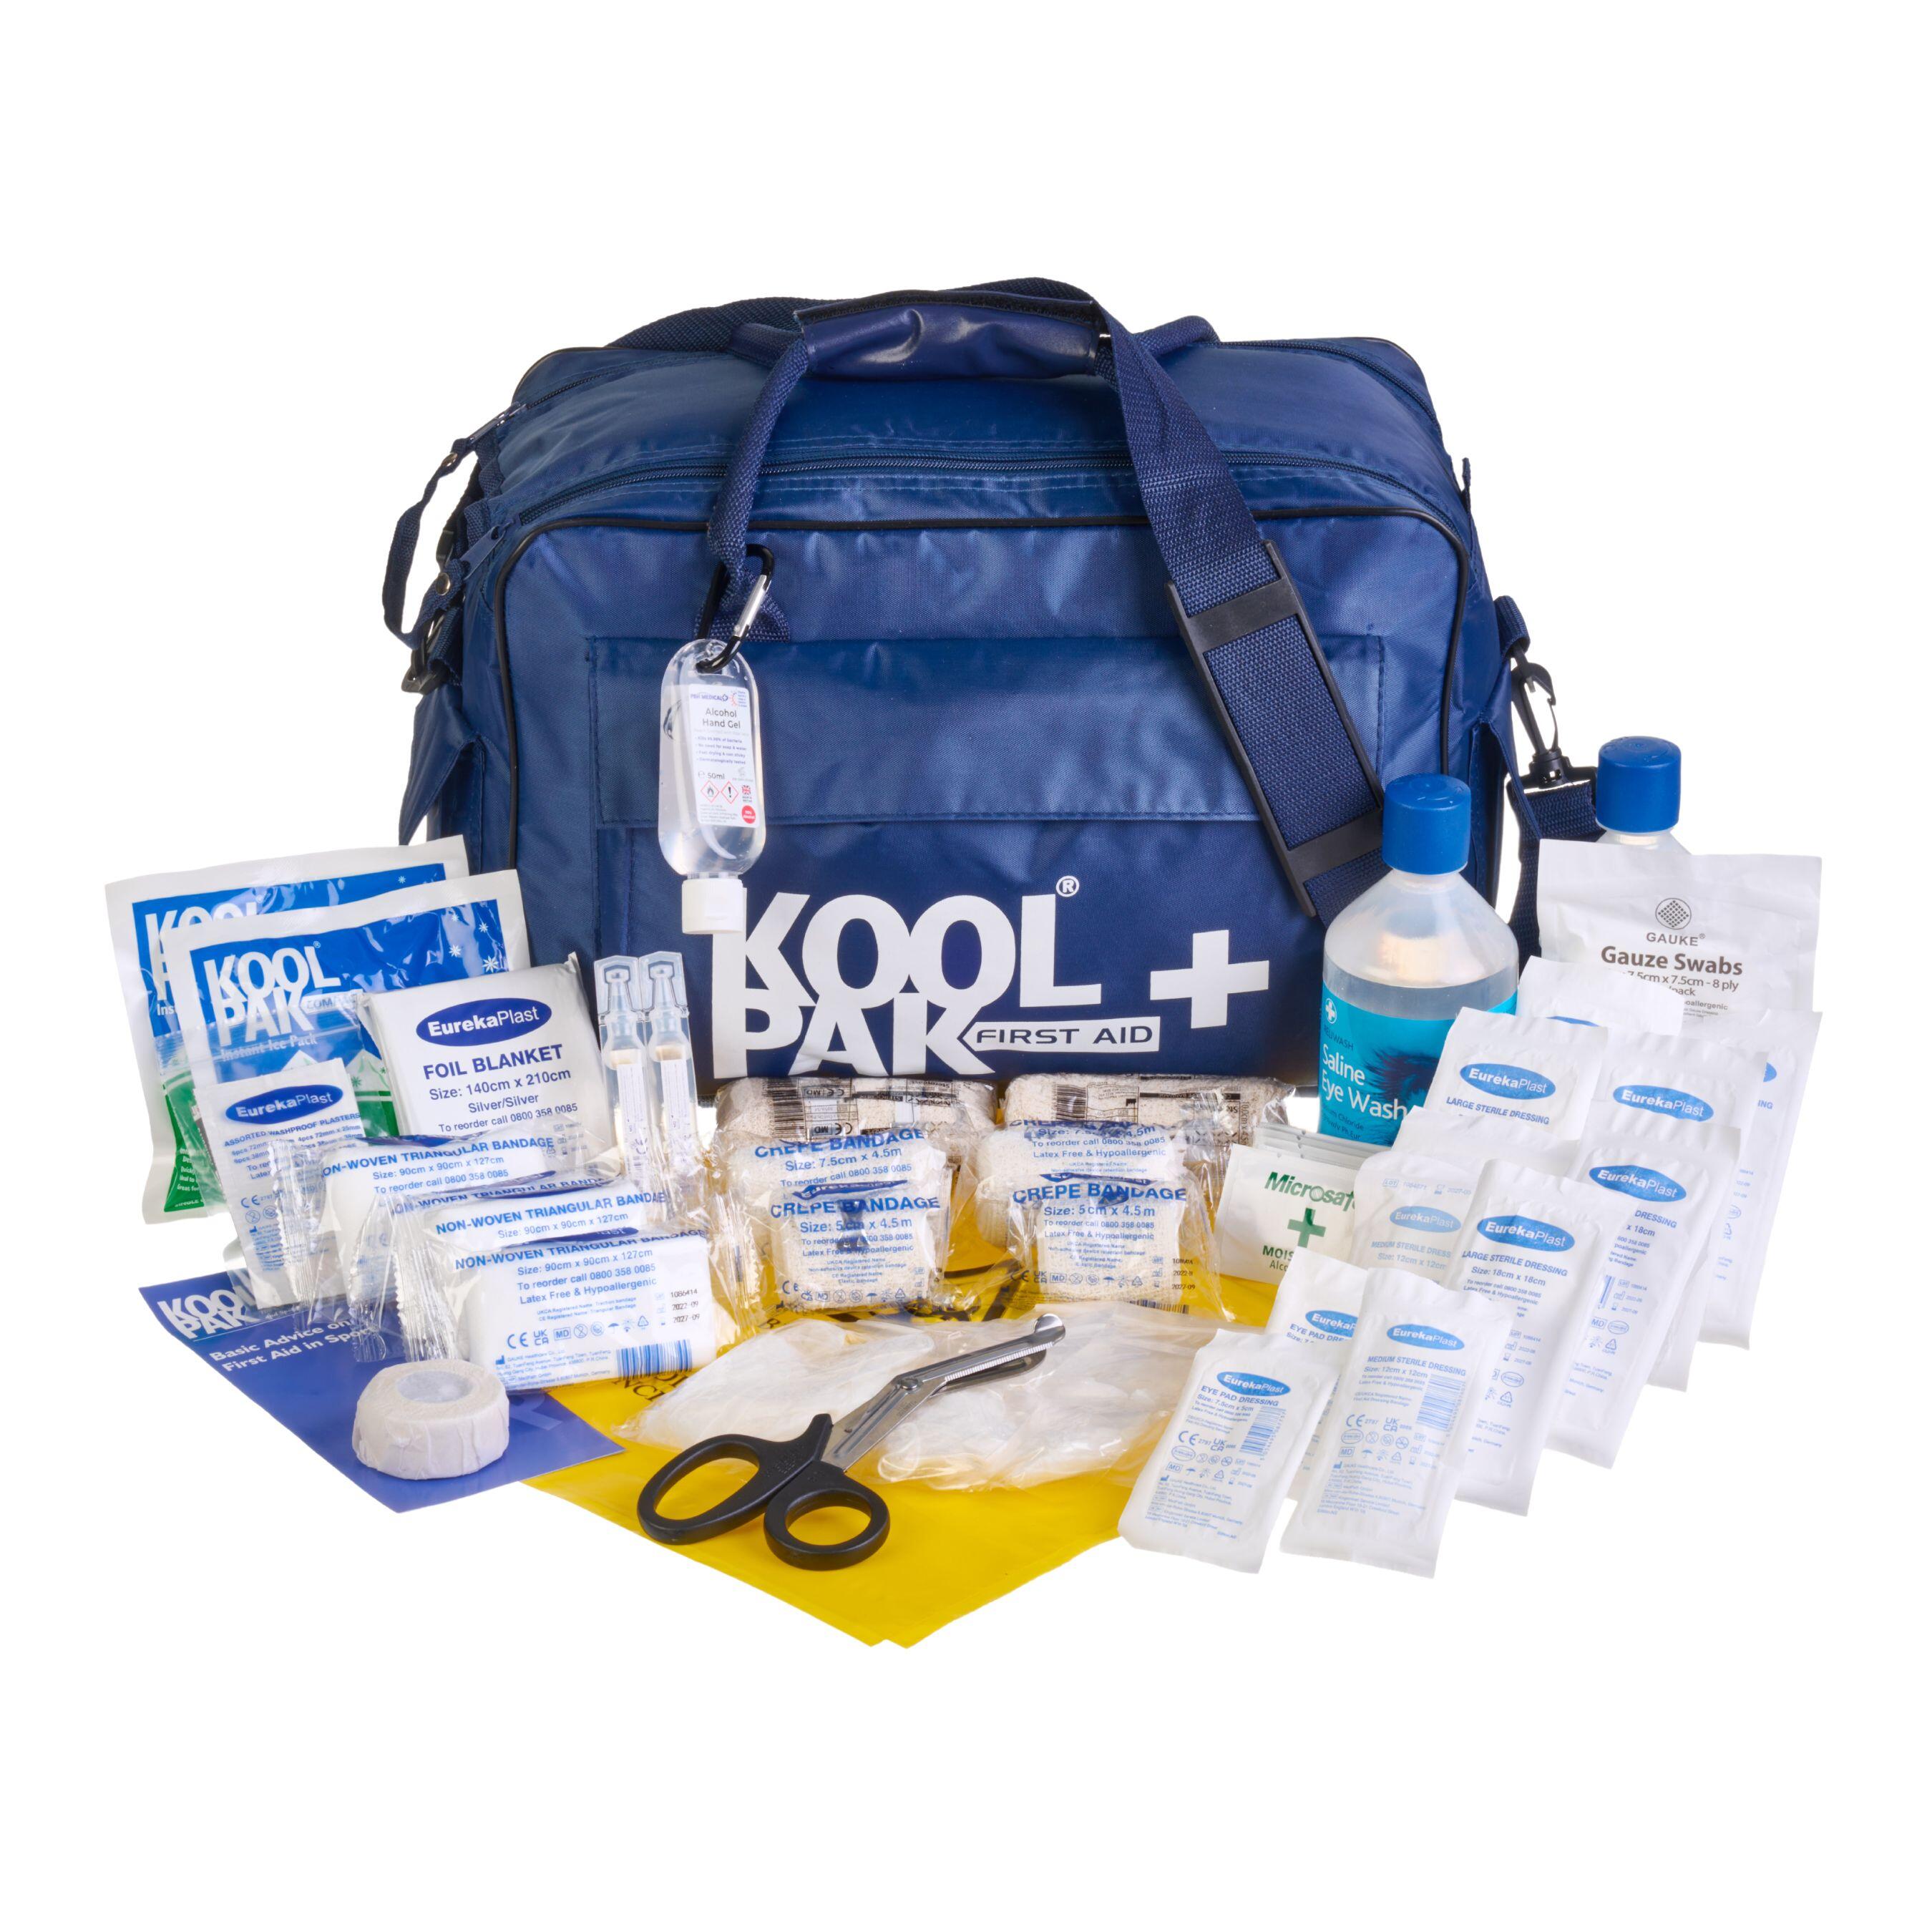 KoolPak Team First Aid Kit Sports Injury Treatment 1/7